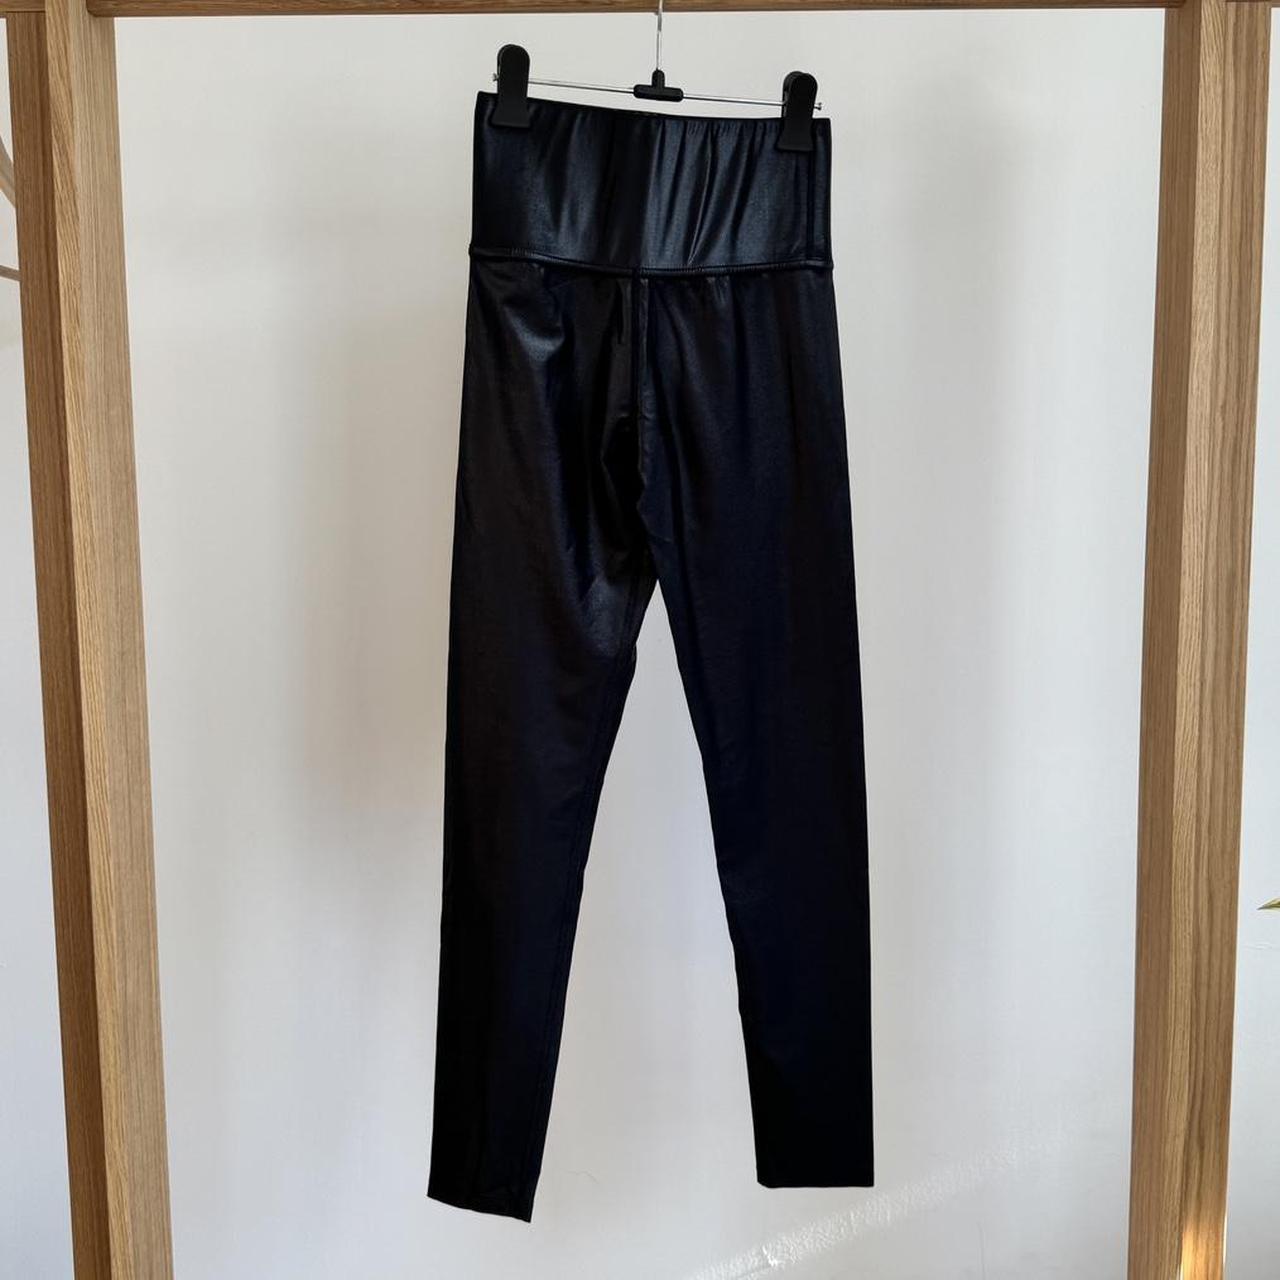 Carbon38 high rise full length legging in takara - Depop